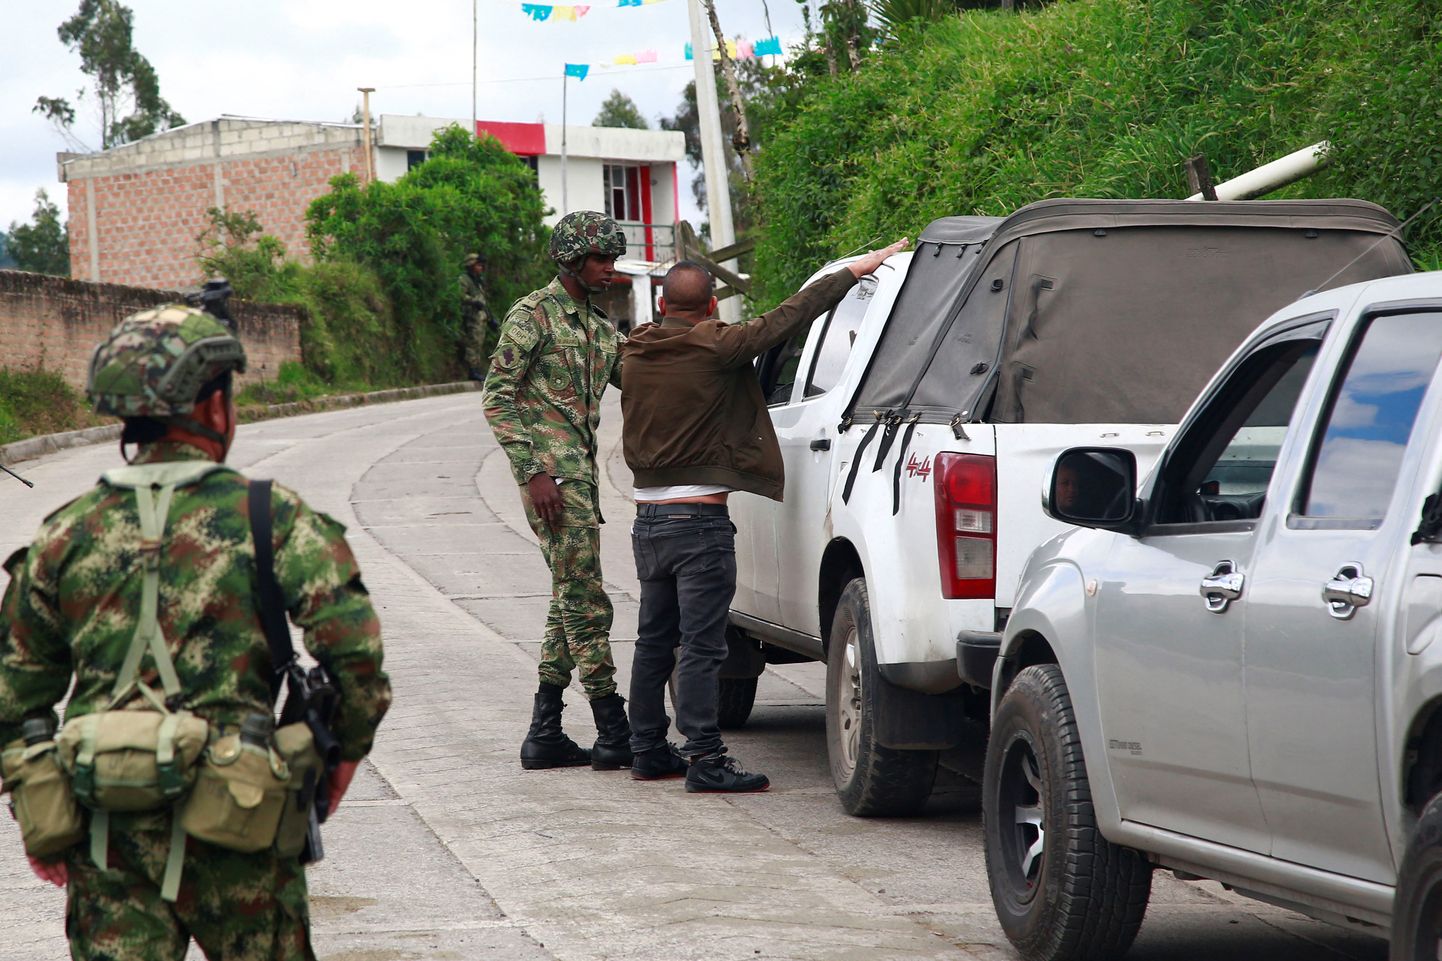 Ecuadori sõdurid autosid kontrollimas.